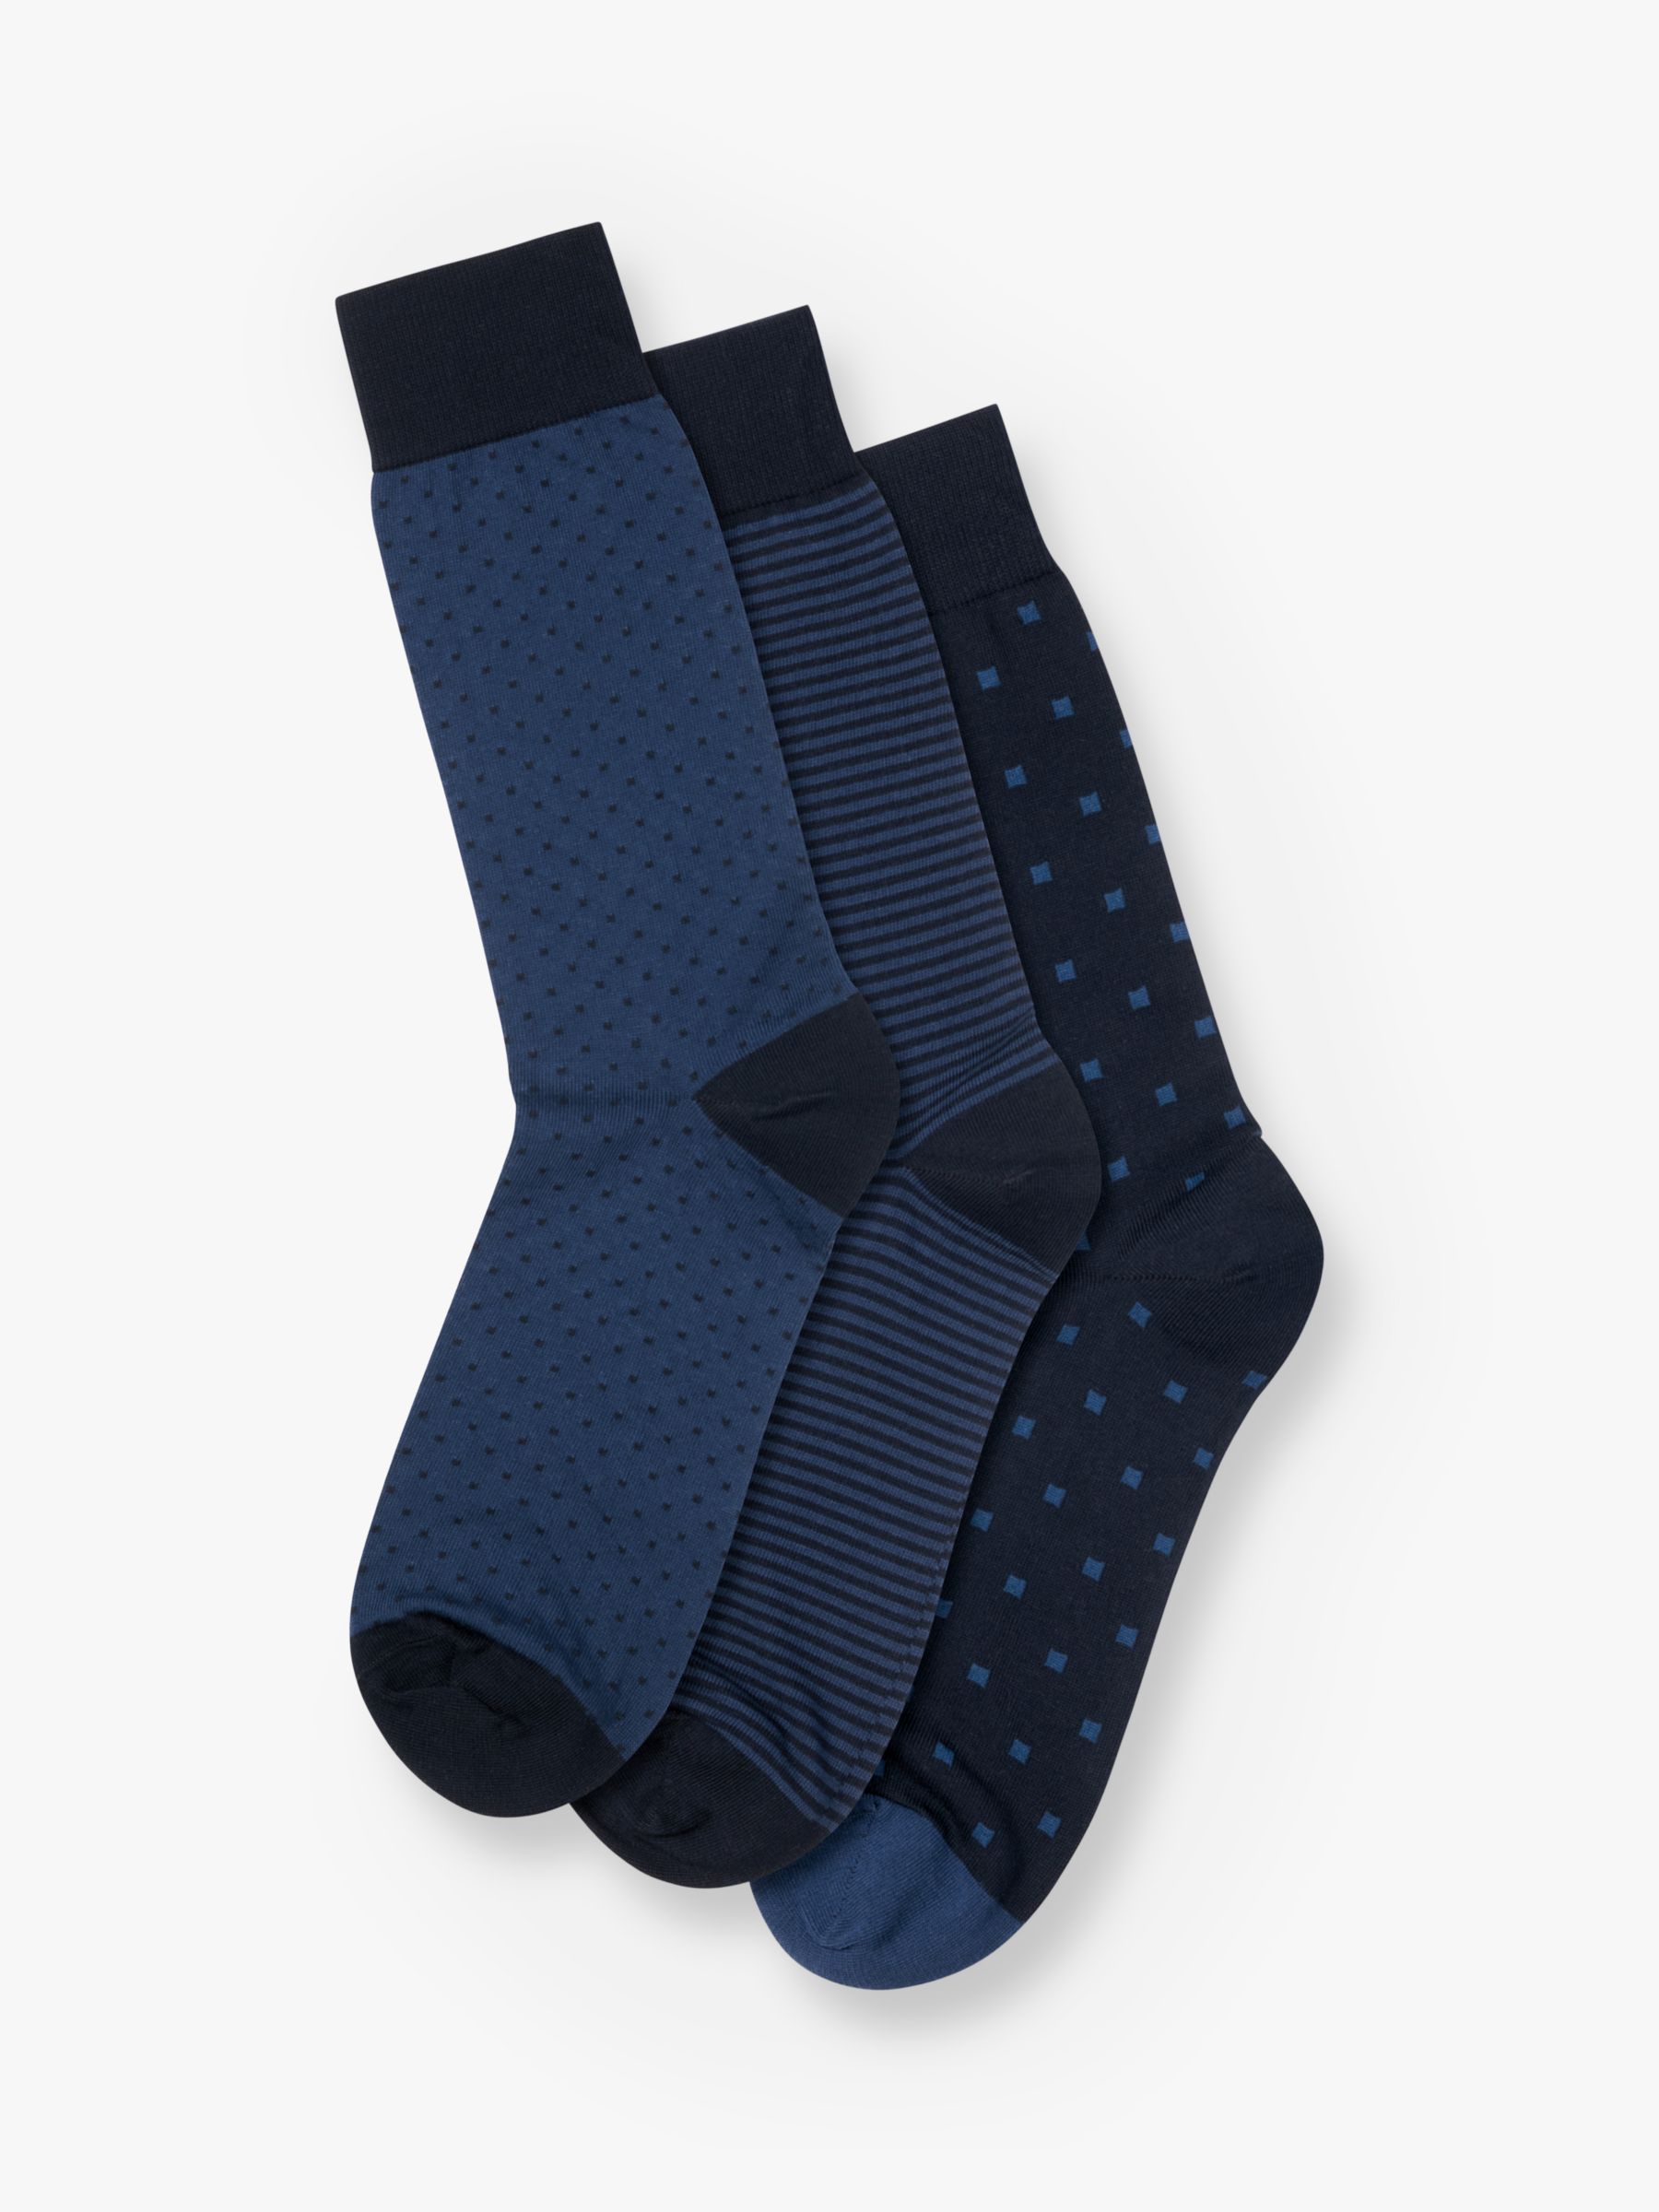 Buy Charles Tyrwhitt Cotton Rich Socks, Pack of 3, Navy/Multi Online at johnlewis.com